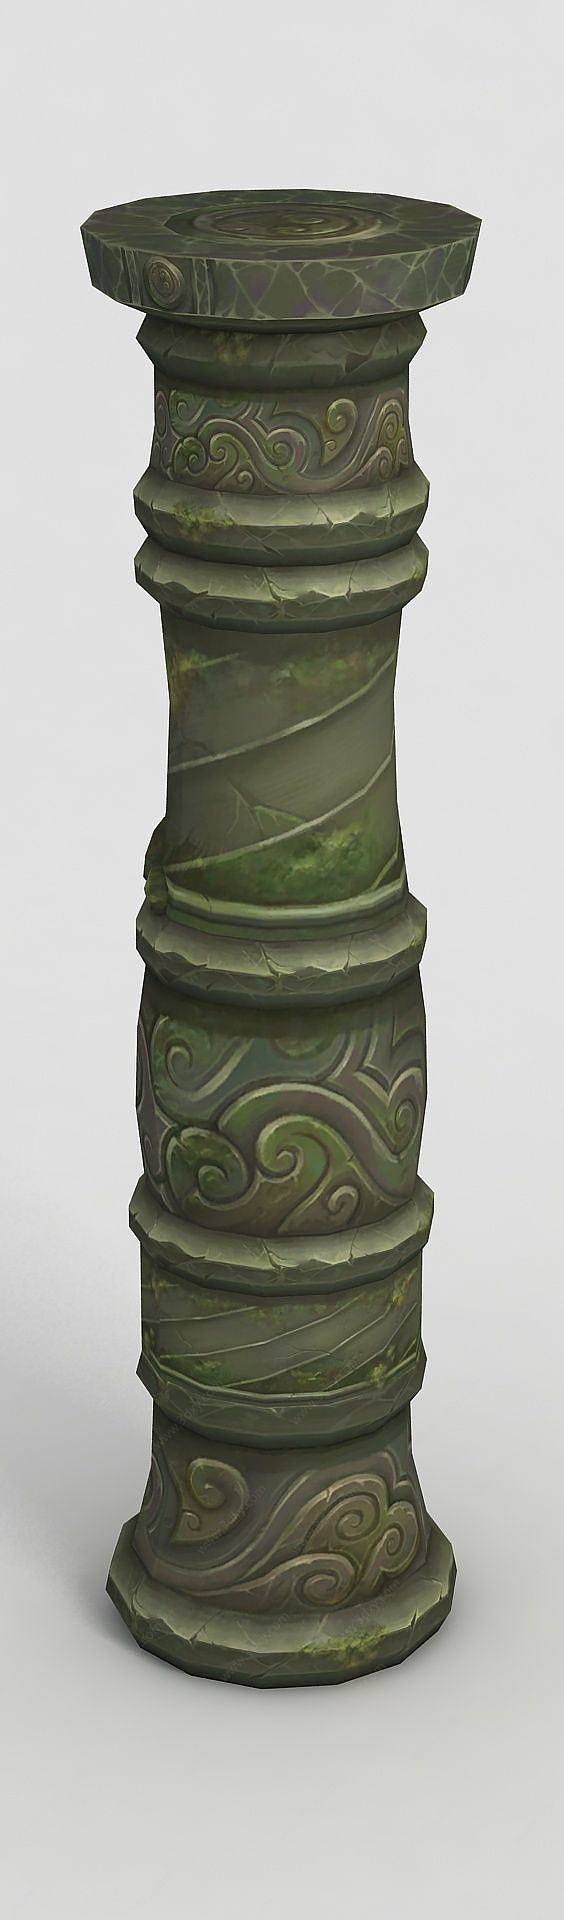 魔兽世界游戏石柱装饰3D模型